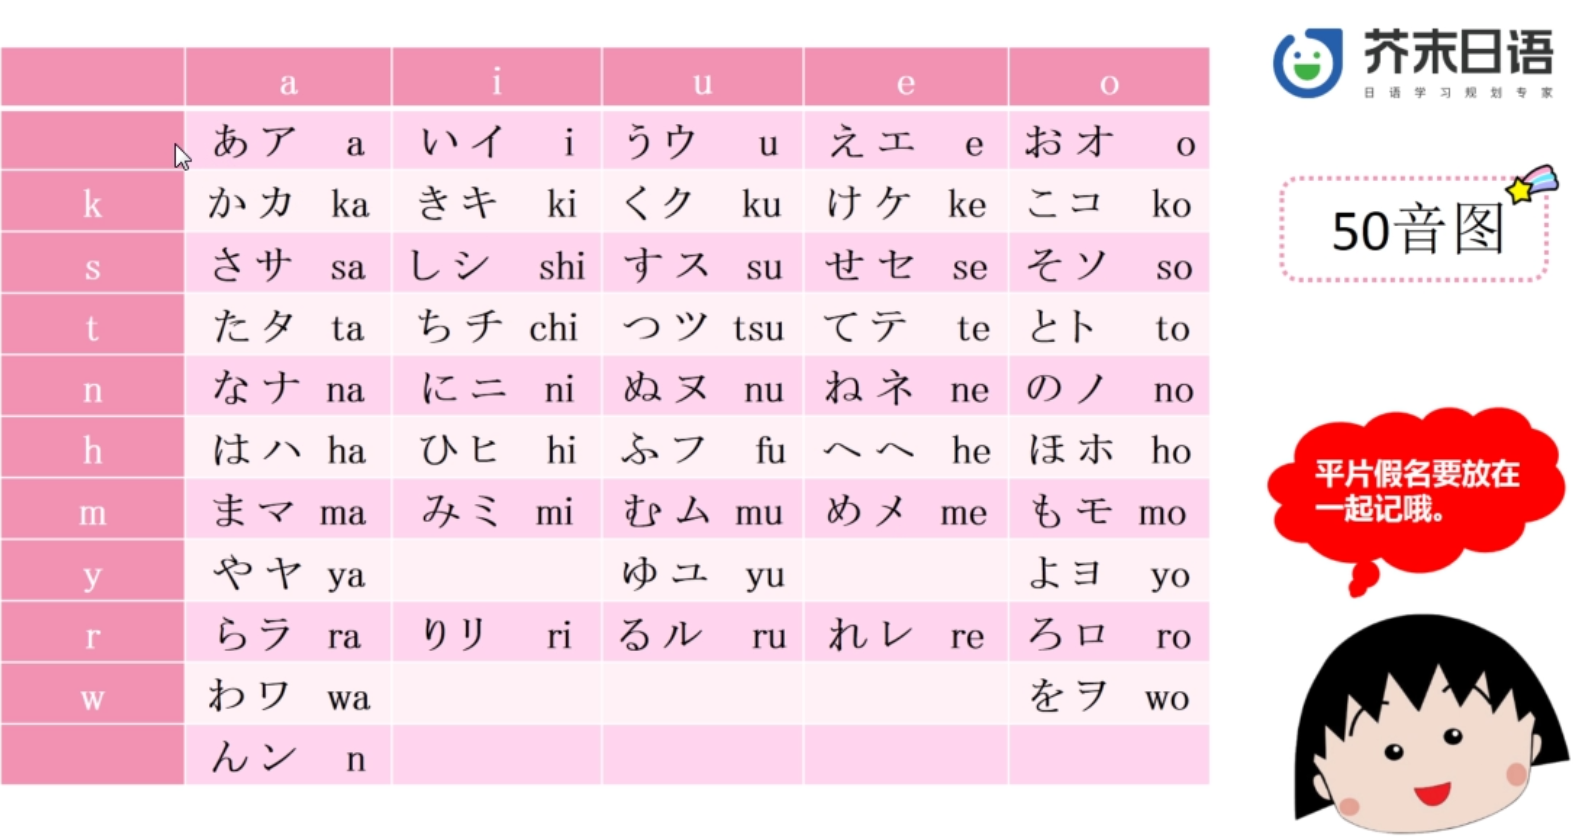 好看有趣的日语五十音图手机壁纸，看看有你喜欢的吗？ - 知乎